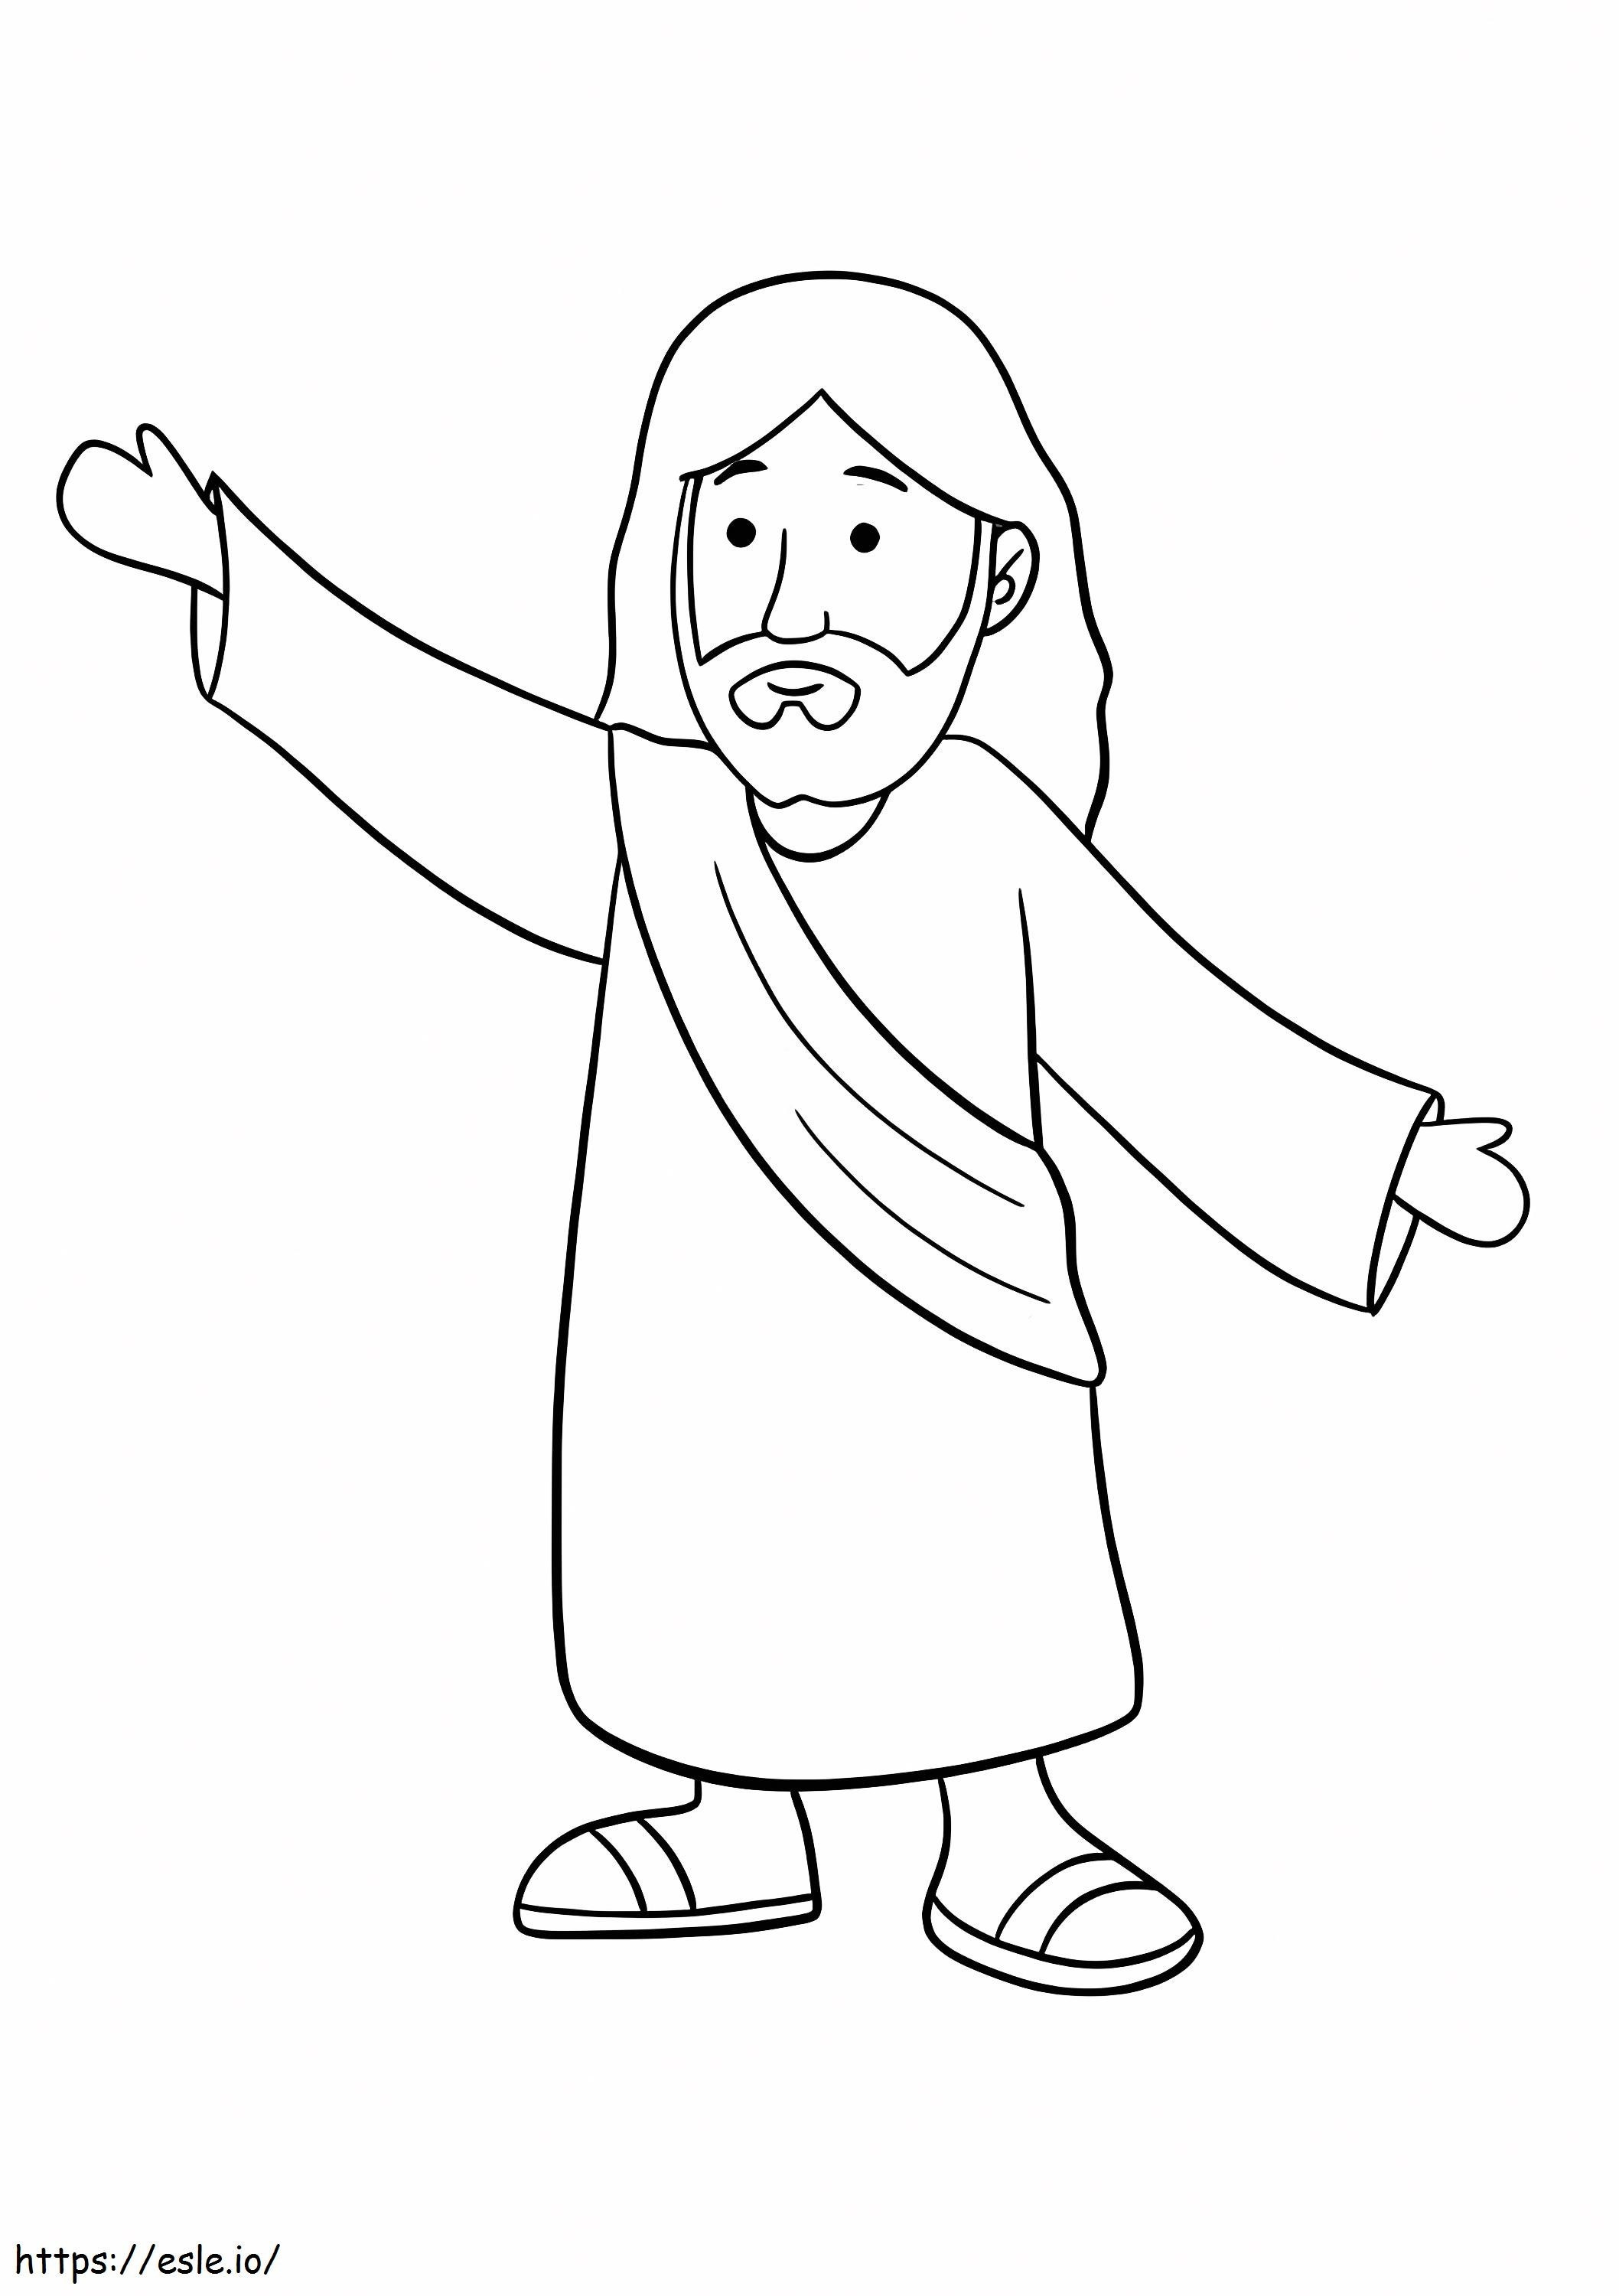 Cartoon Jesus coloring page